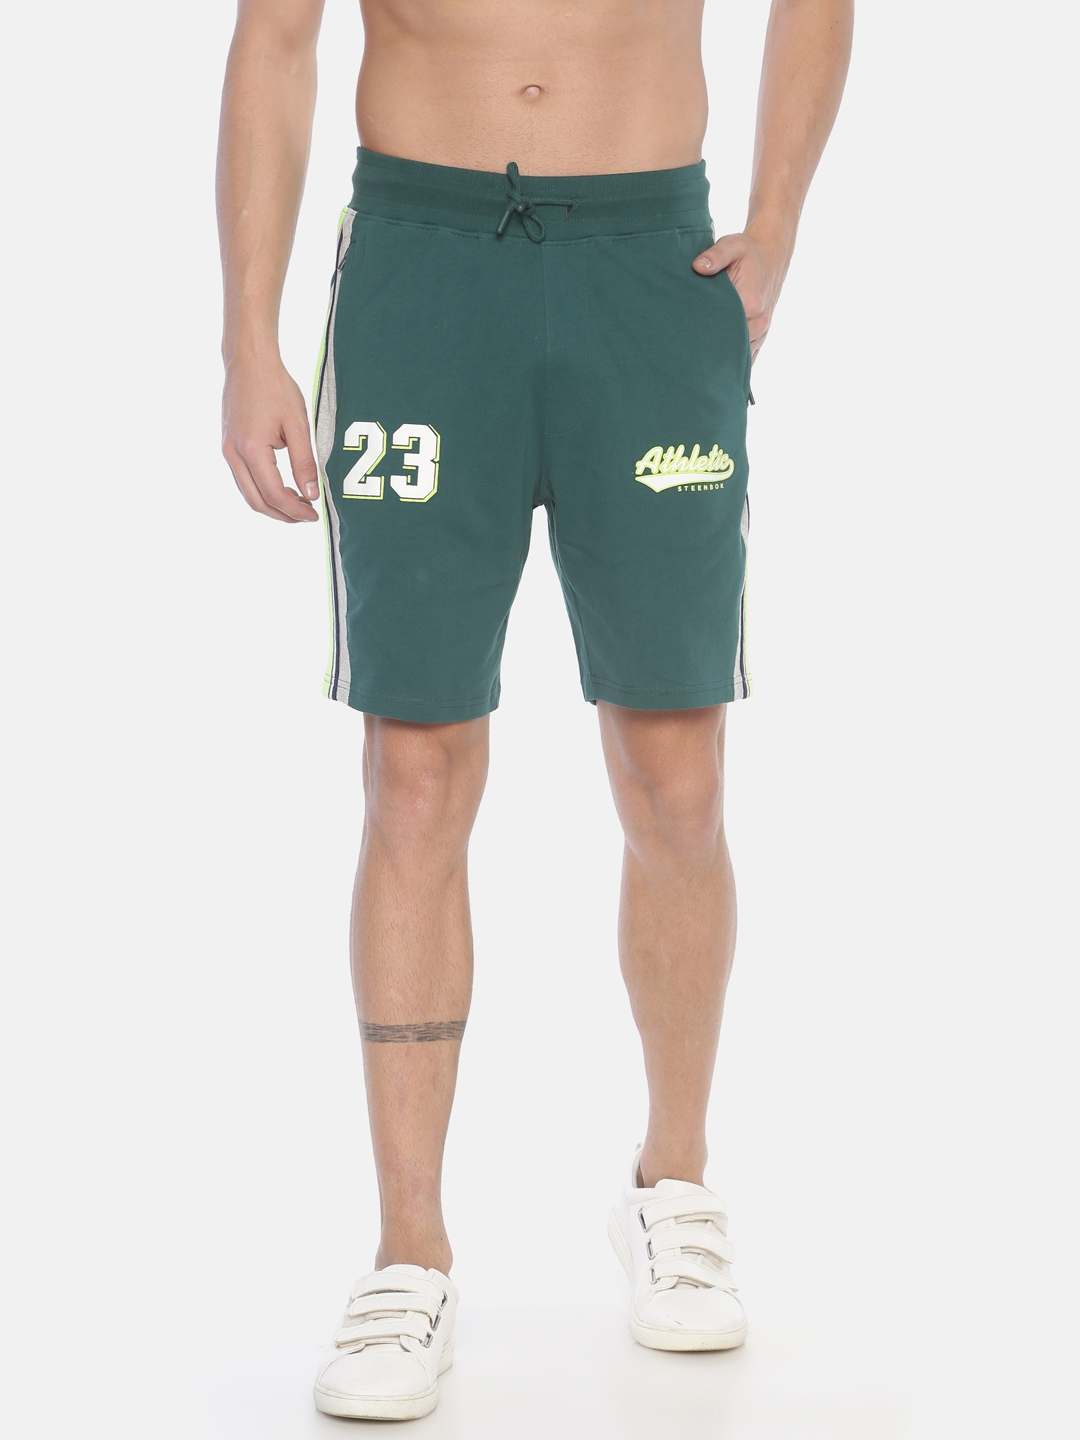 Steenbok | Steenbok Men's Dark Green Shorts